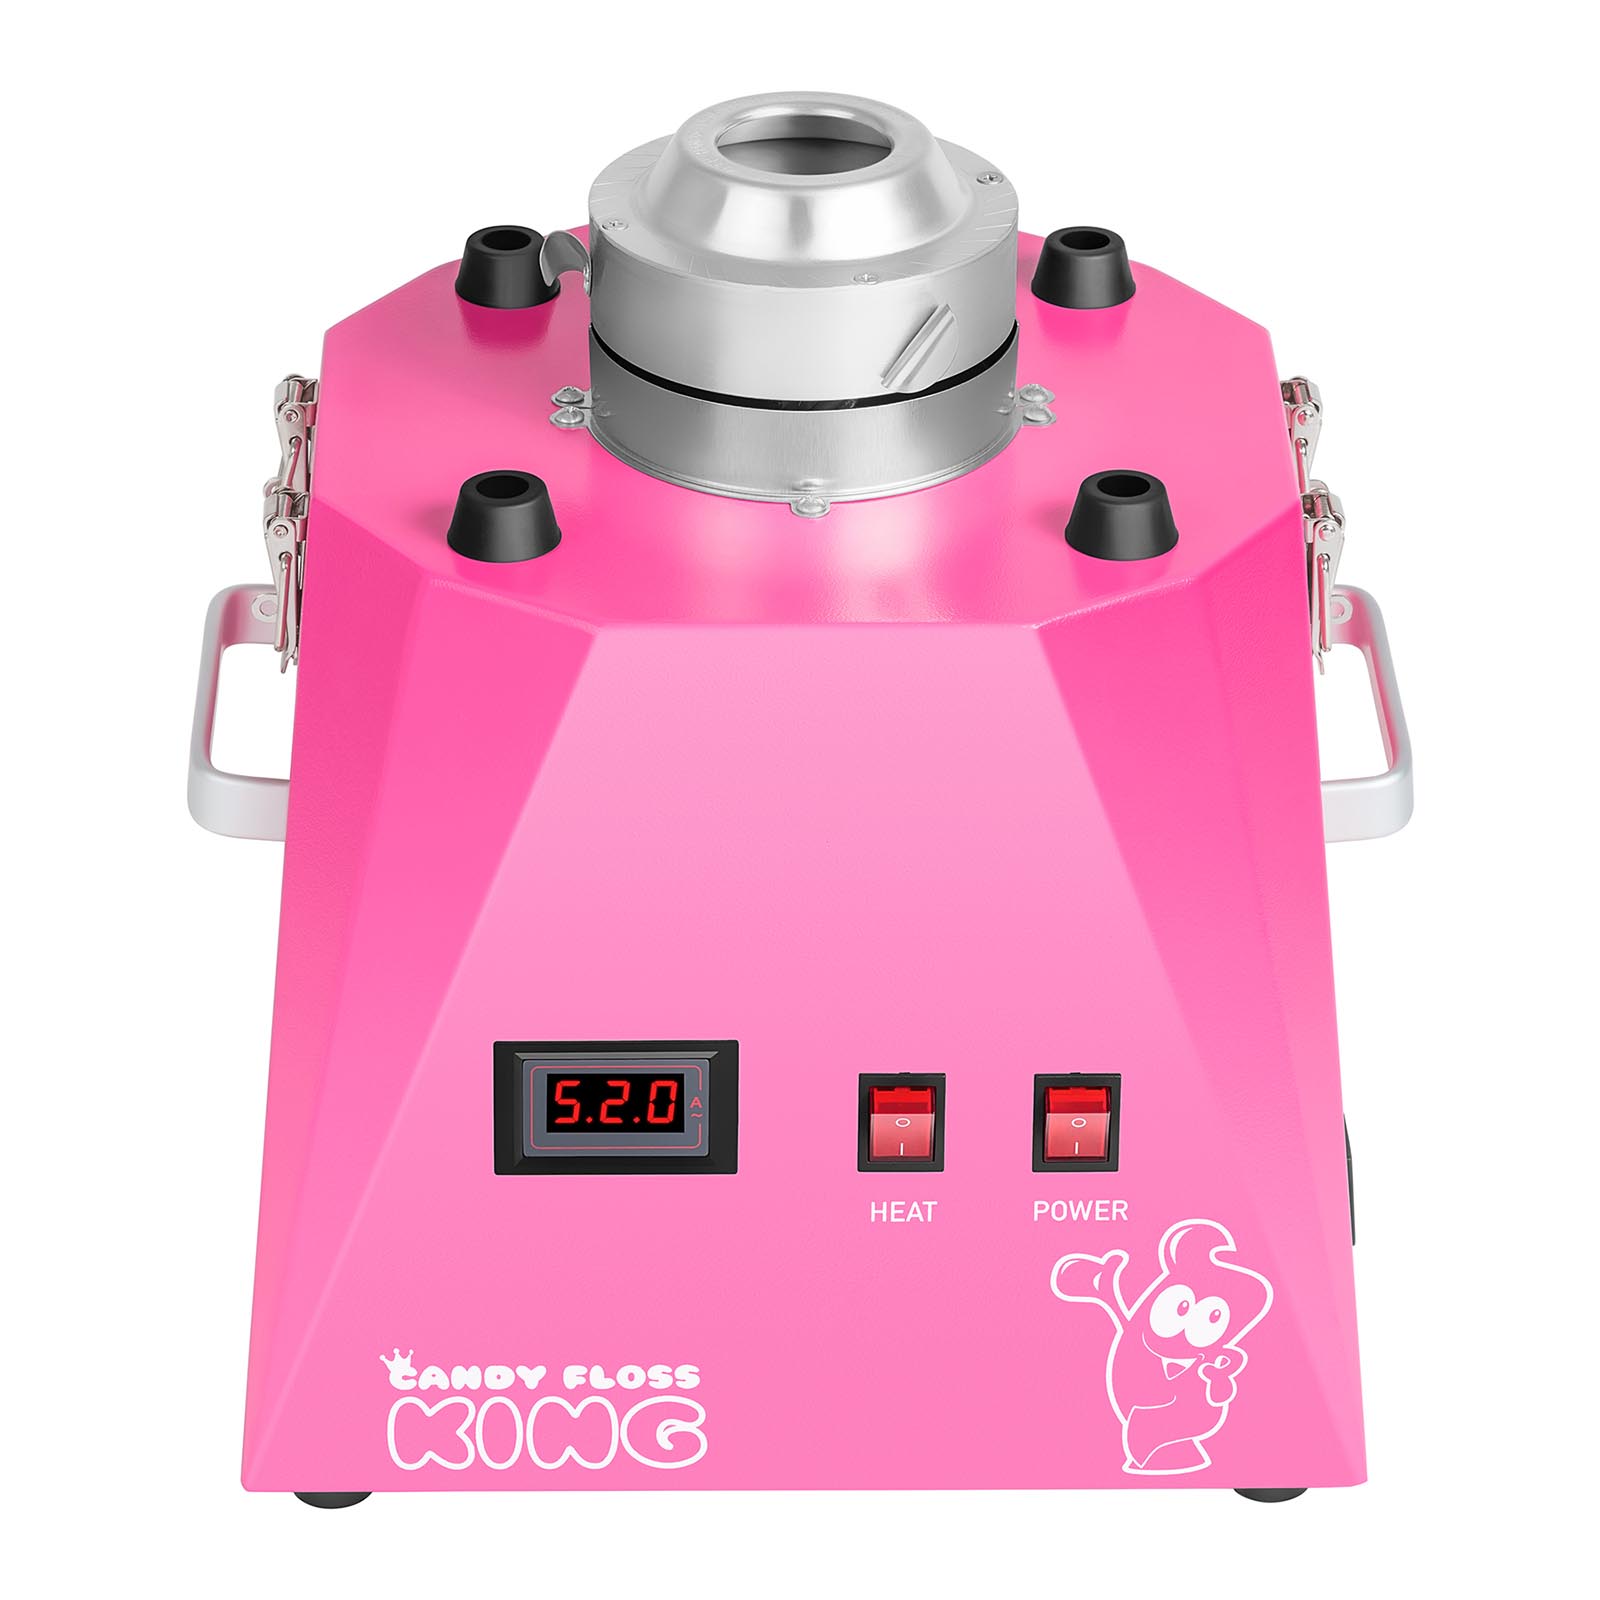 Vattacukor készítő gép készlet pálcikákkal - búrával - 52 cm - 1030 watt - pink